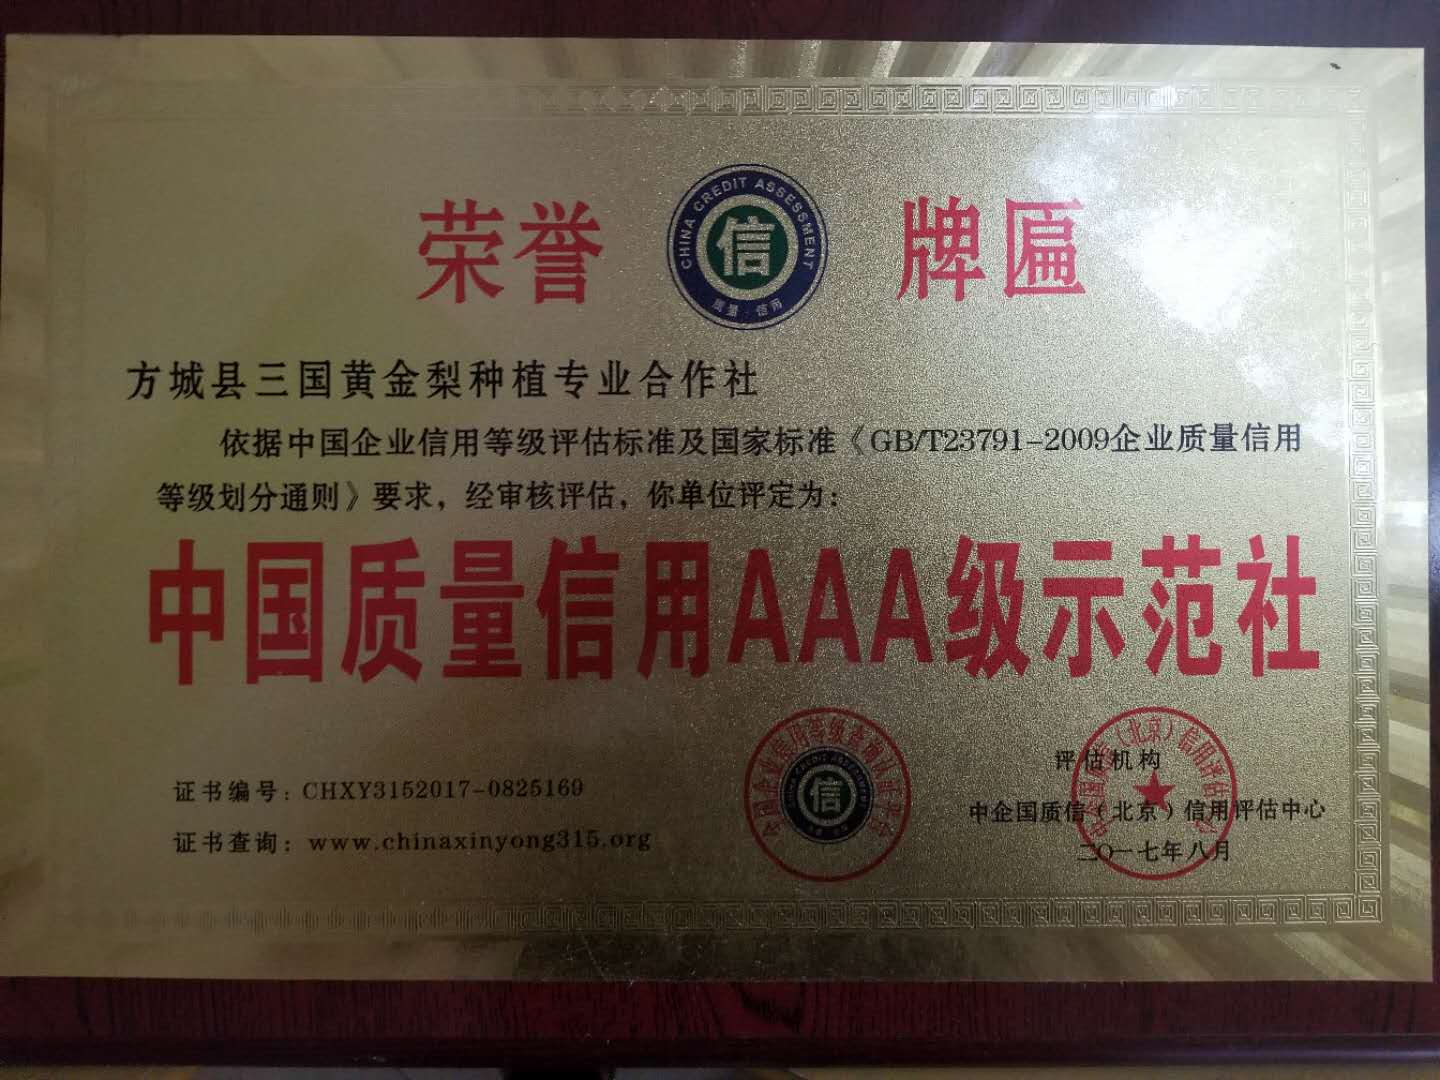 中国质量信誉AAA级示范社